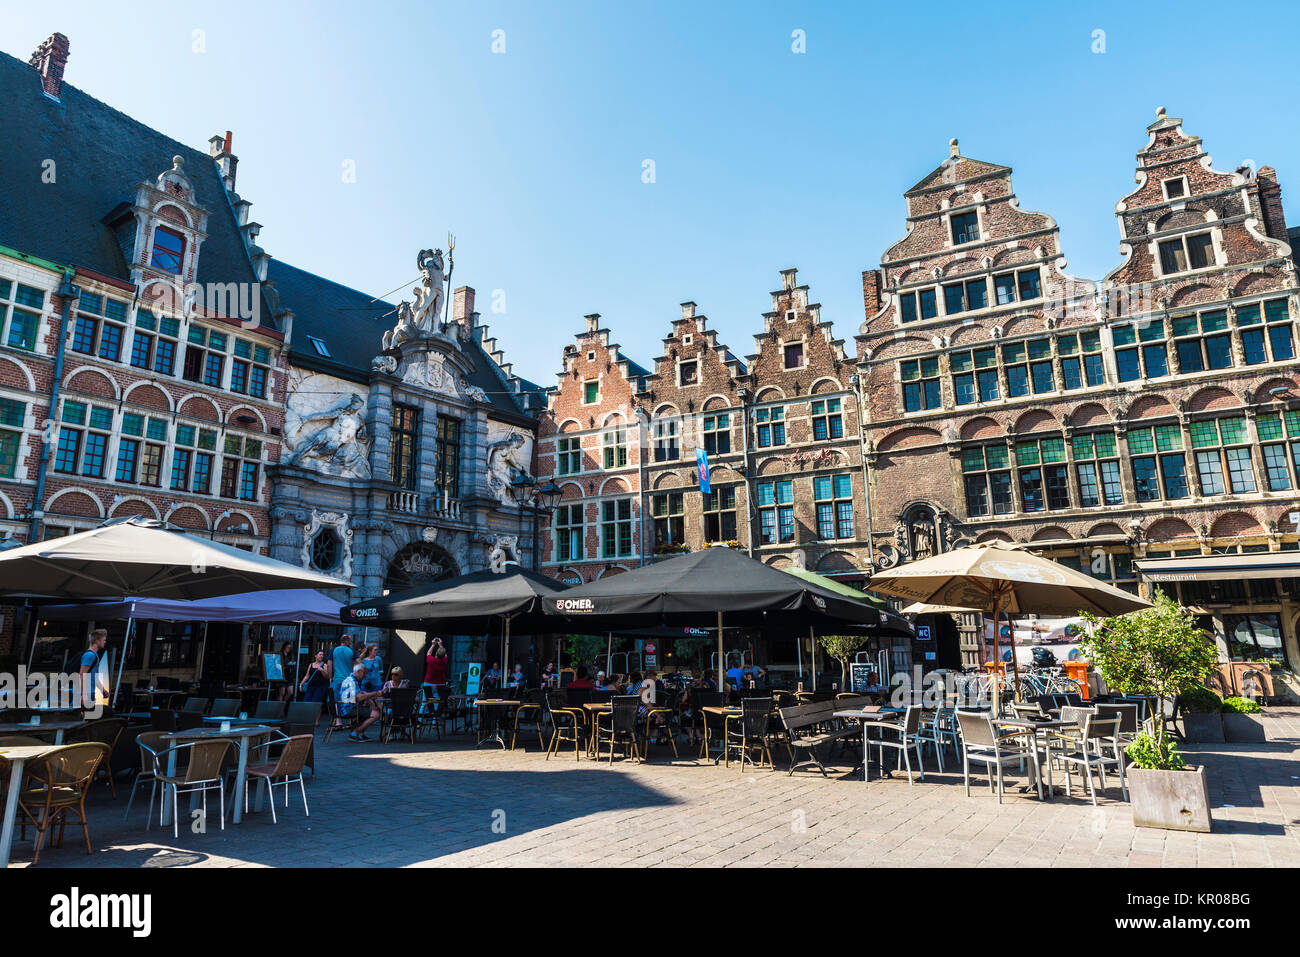 Gand, Belgique - 29 août 2017 : Street, avec ses bars et restaurants et les gens marcher situé dans le vieux centre historique de la ville médiévale de Gand Banque D'Images